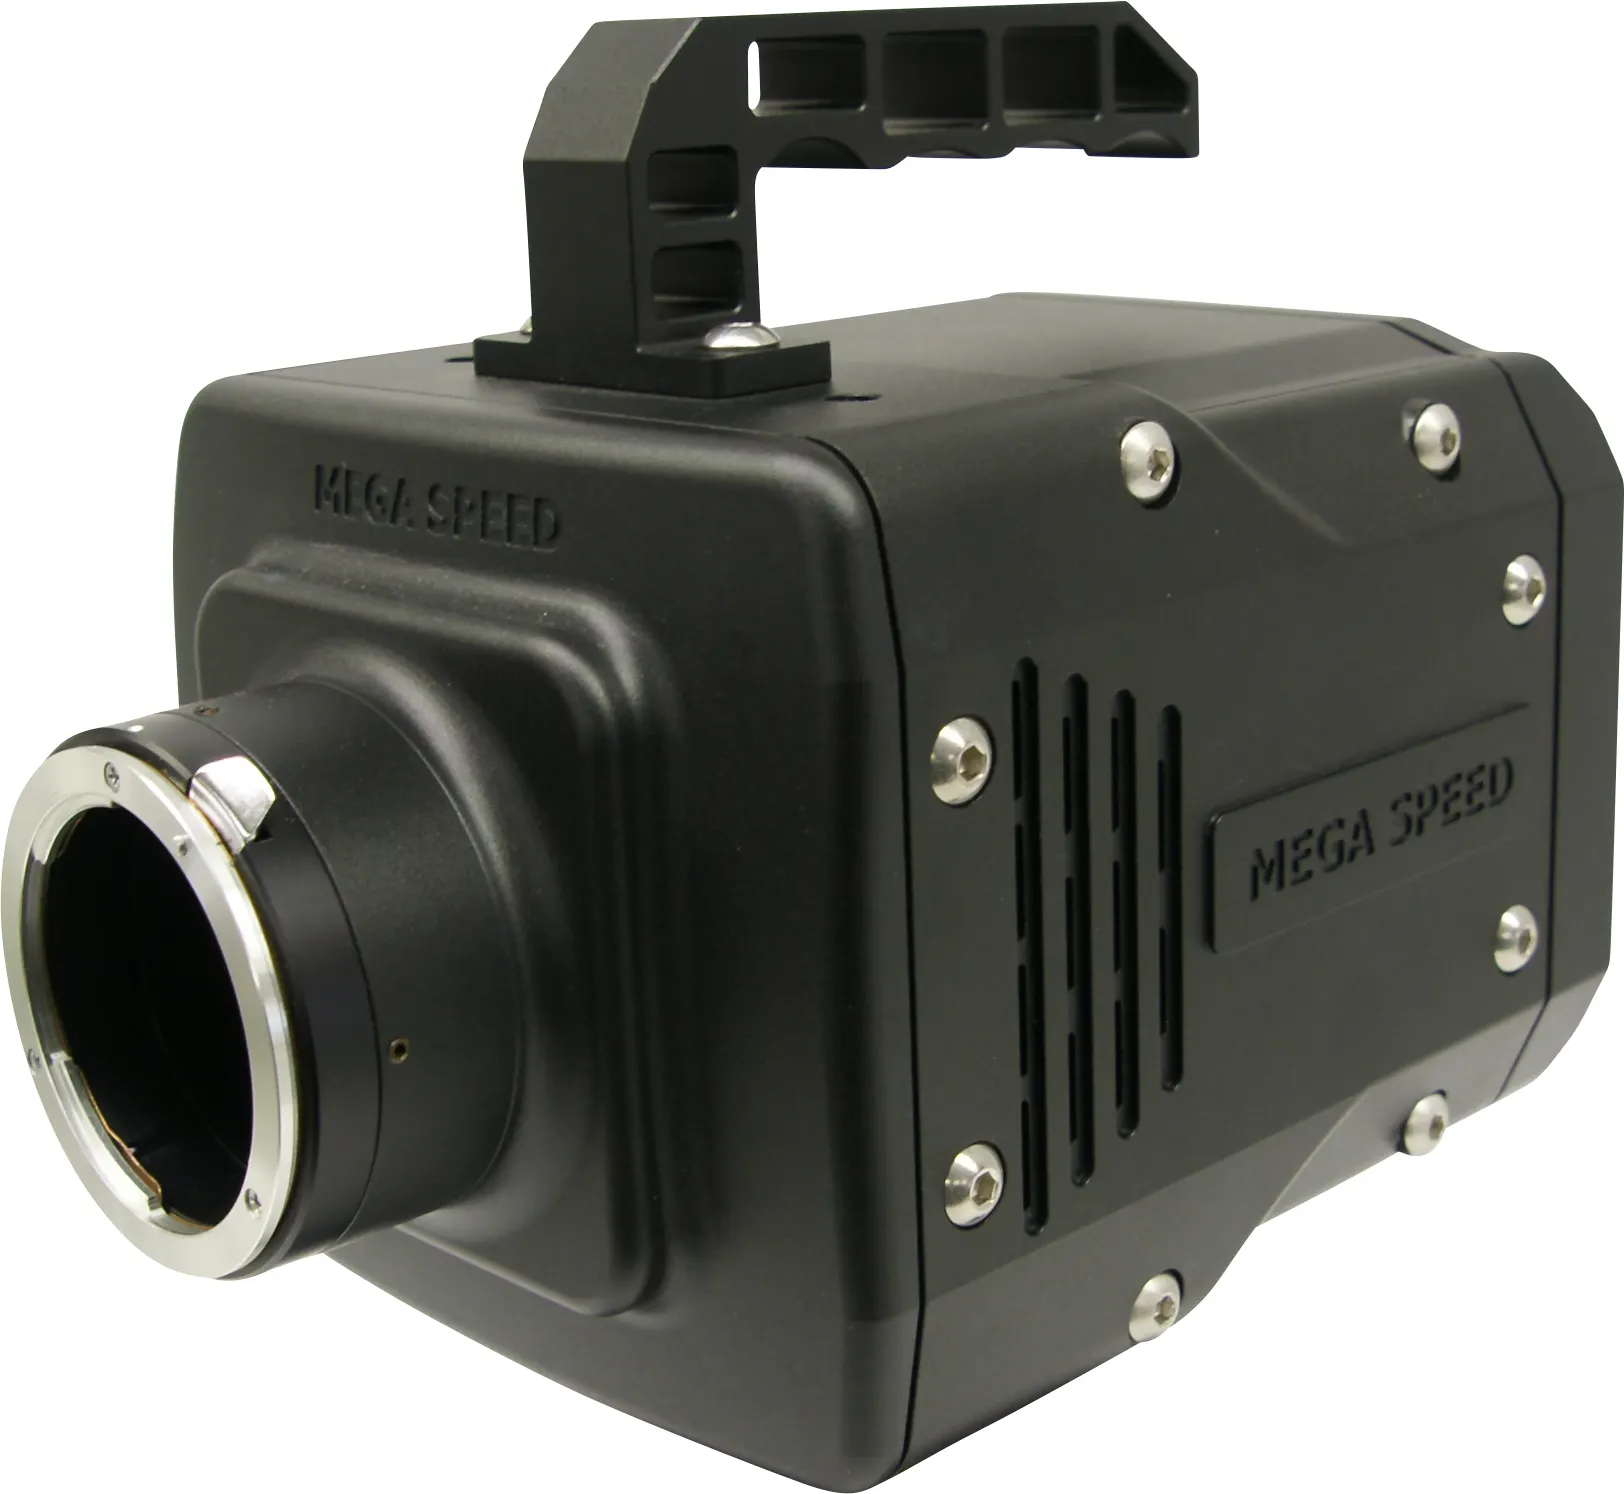 高速相机视觉检测系统的主要意义是什么